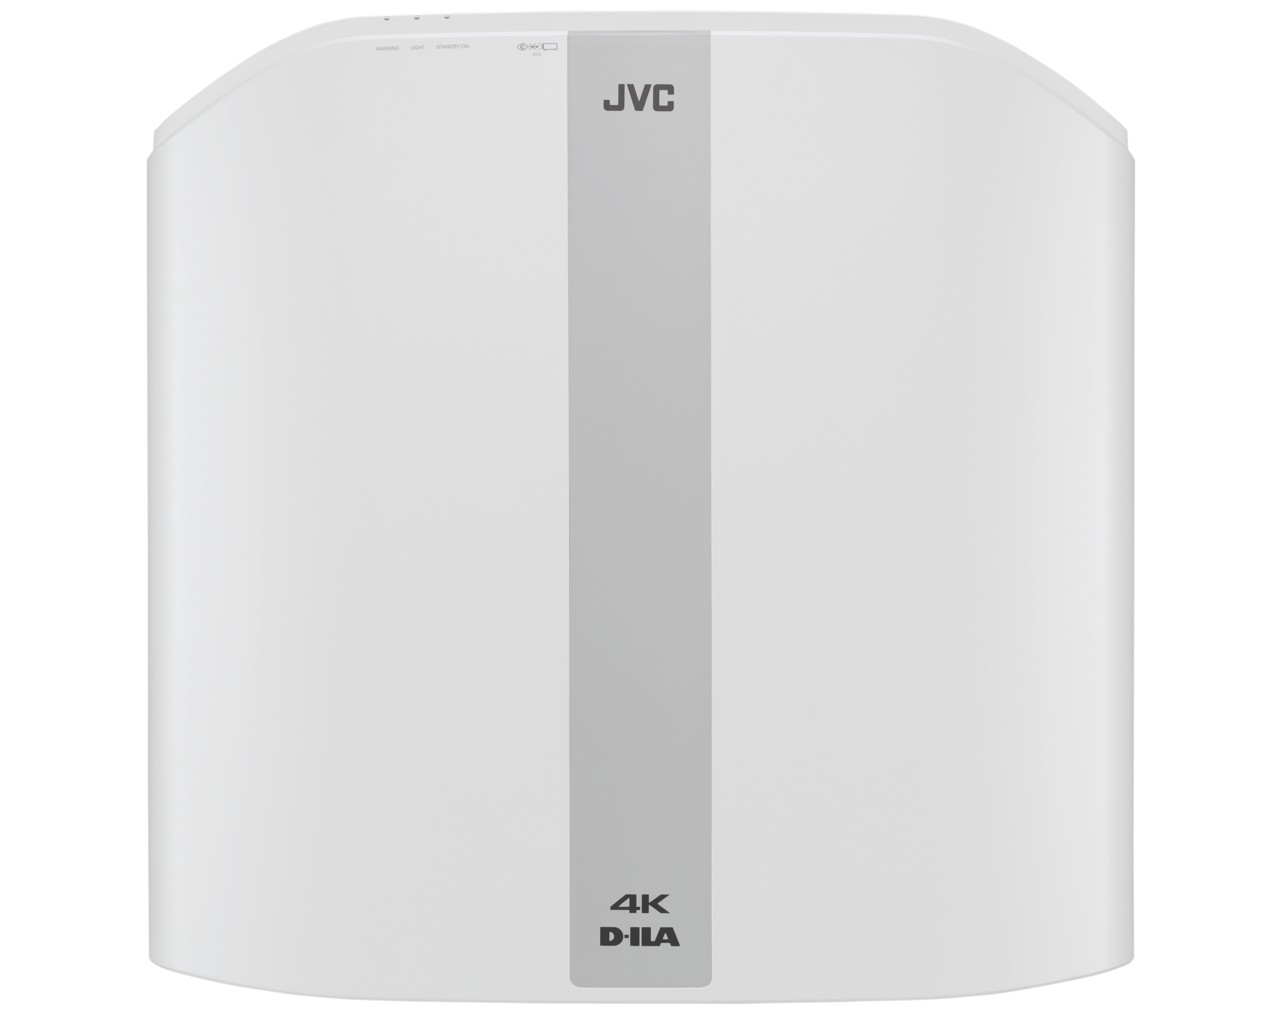 JVC DLA-NP5W DILA 4K projektor